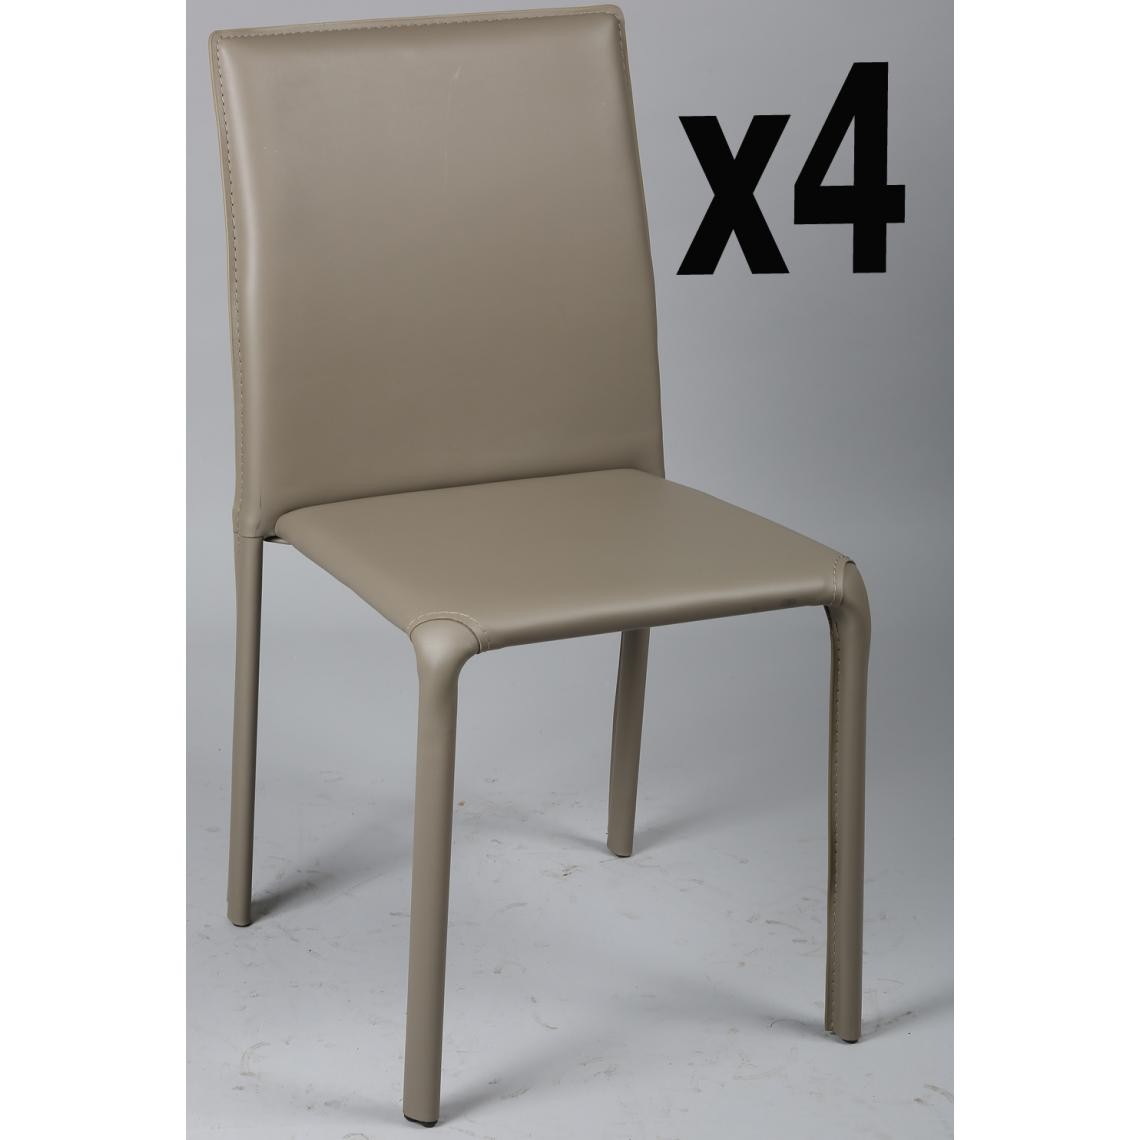 Pegane - Lot de 4 chaises en métal, recouverte de PVC taupe, Ht. 830 x Ht. Ass 450 x L460 x l550 mm - Chaises